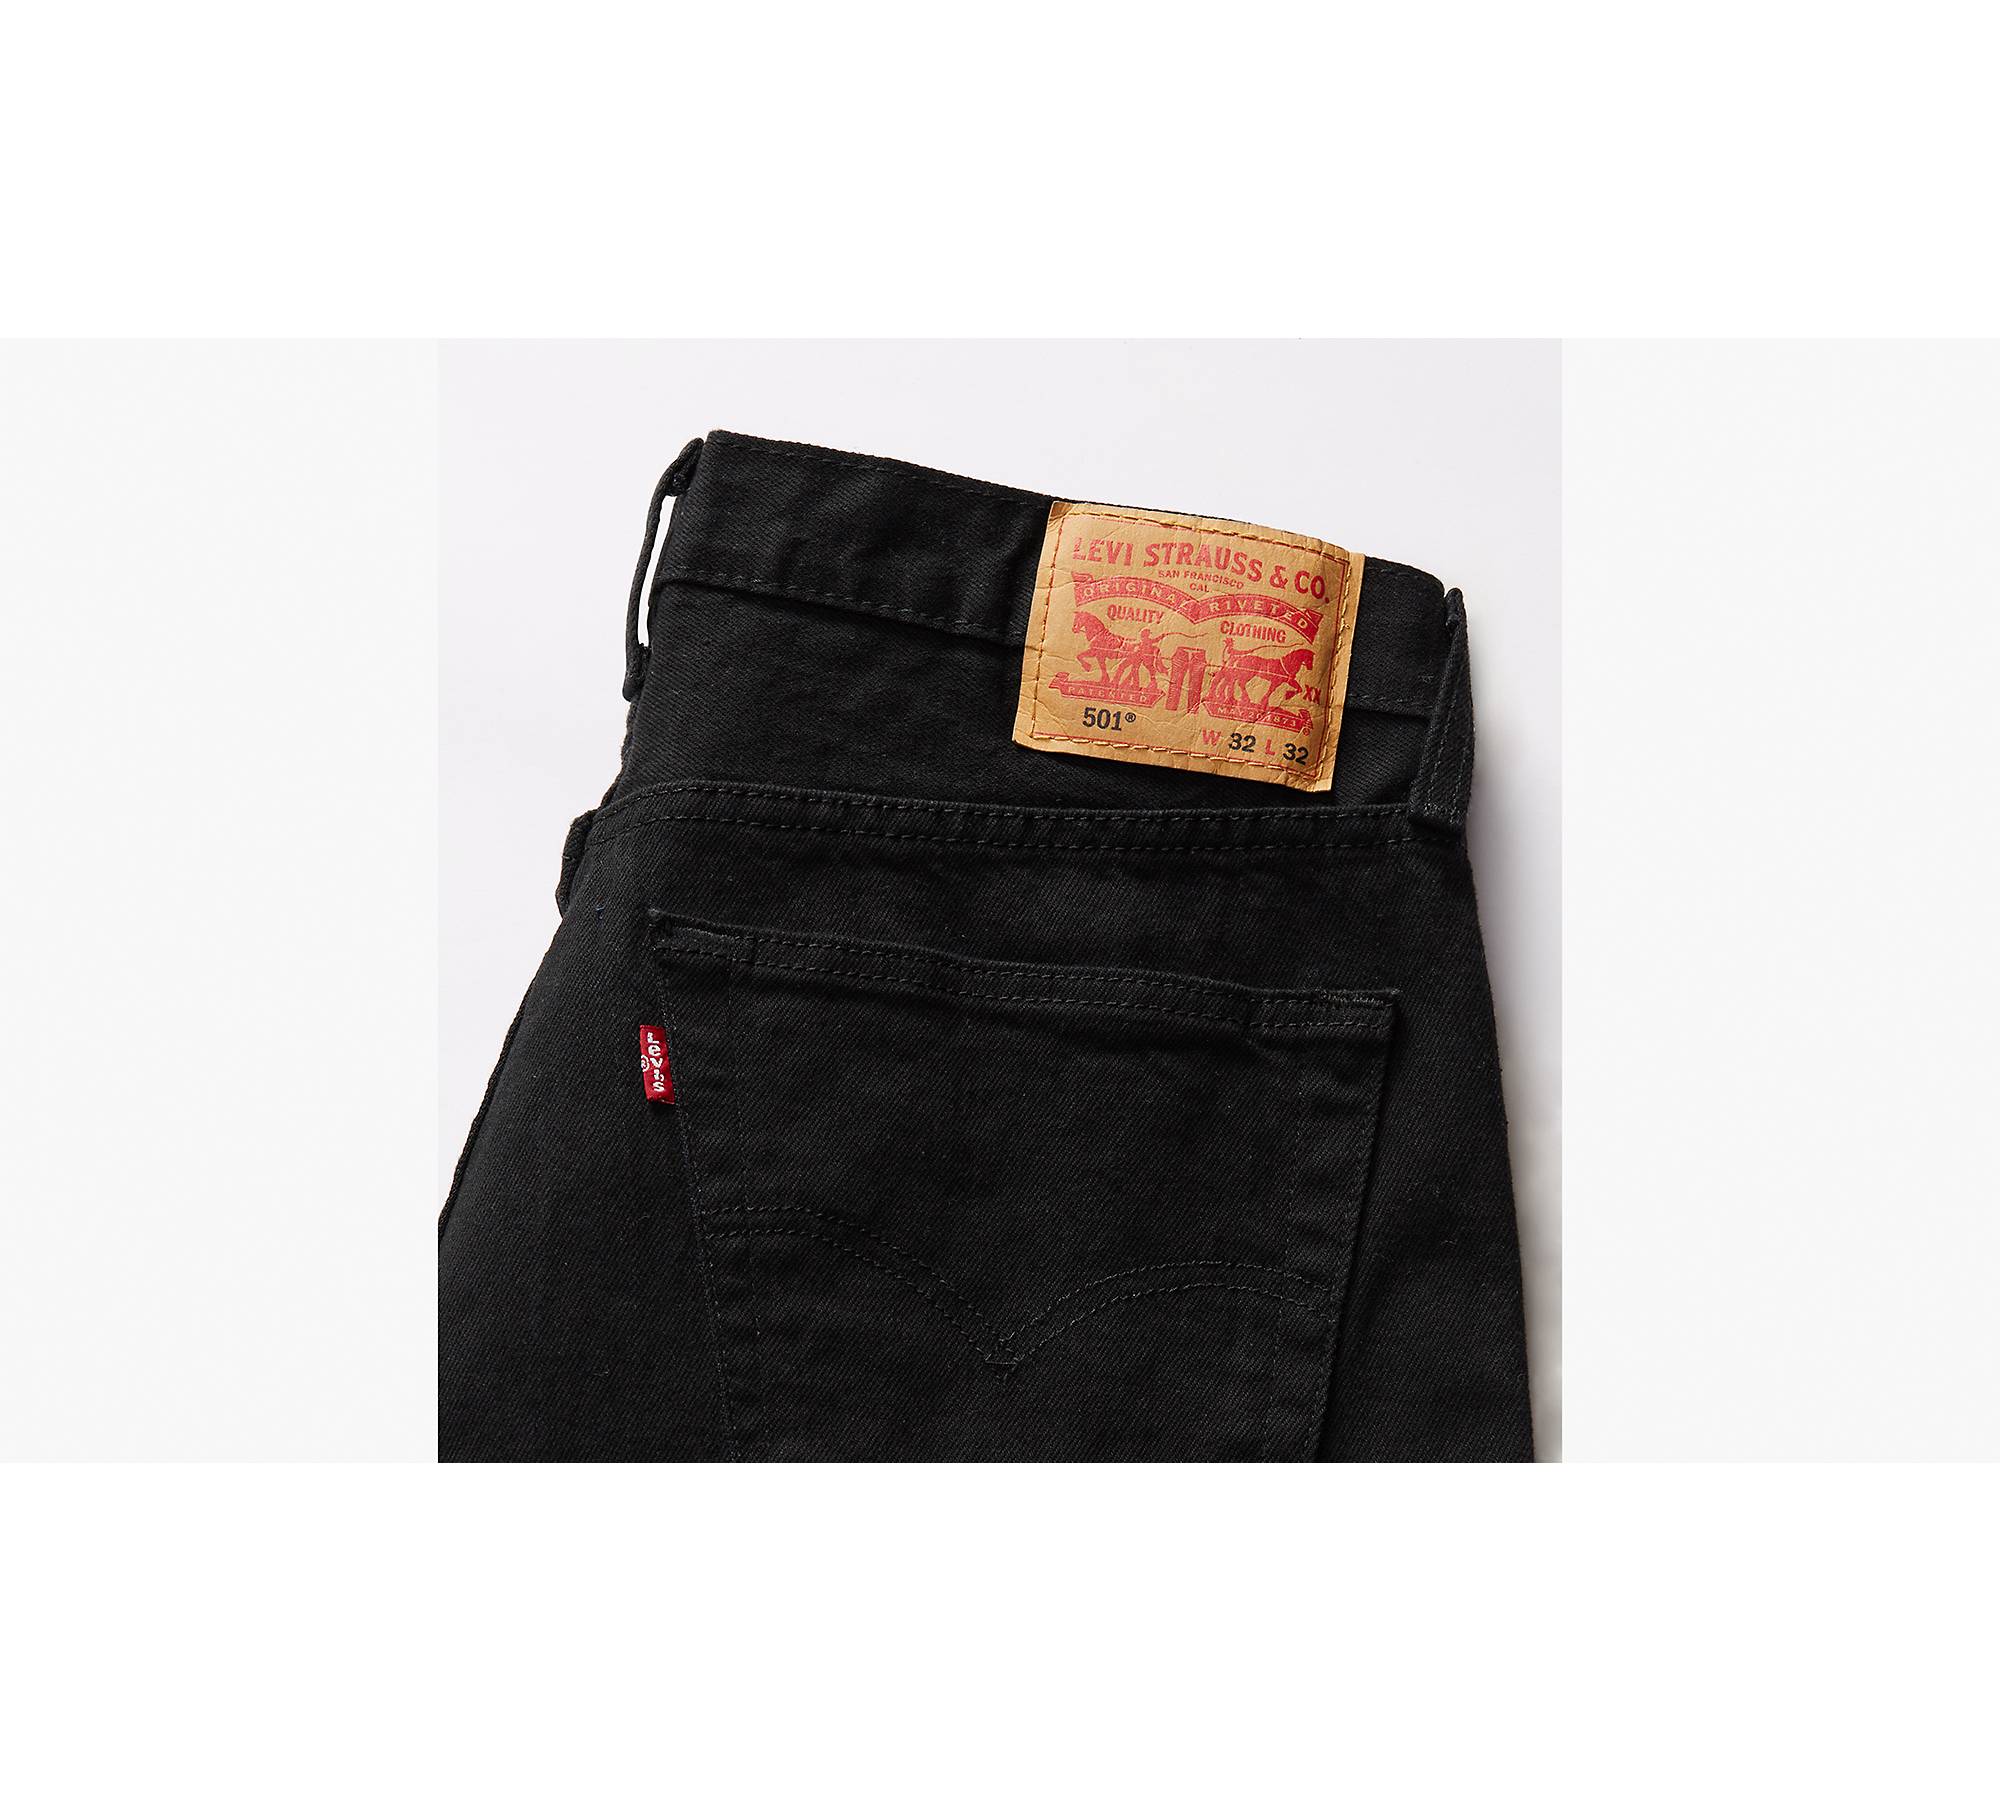 50.0% OFF on LEVI'S Men's 501® Original Jeans Black Destructed